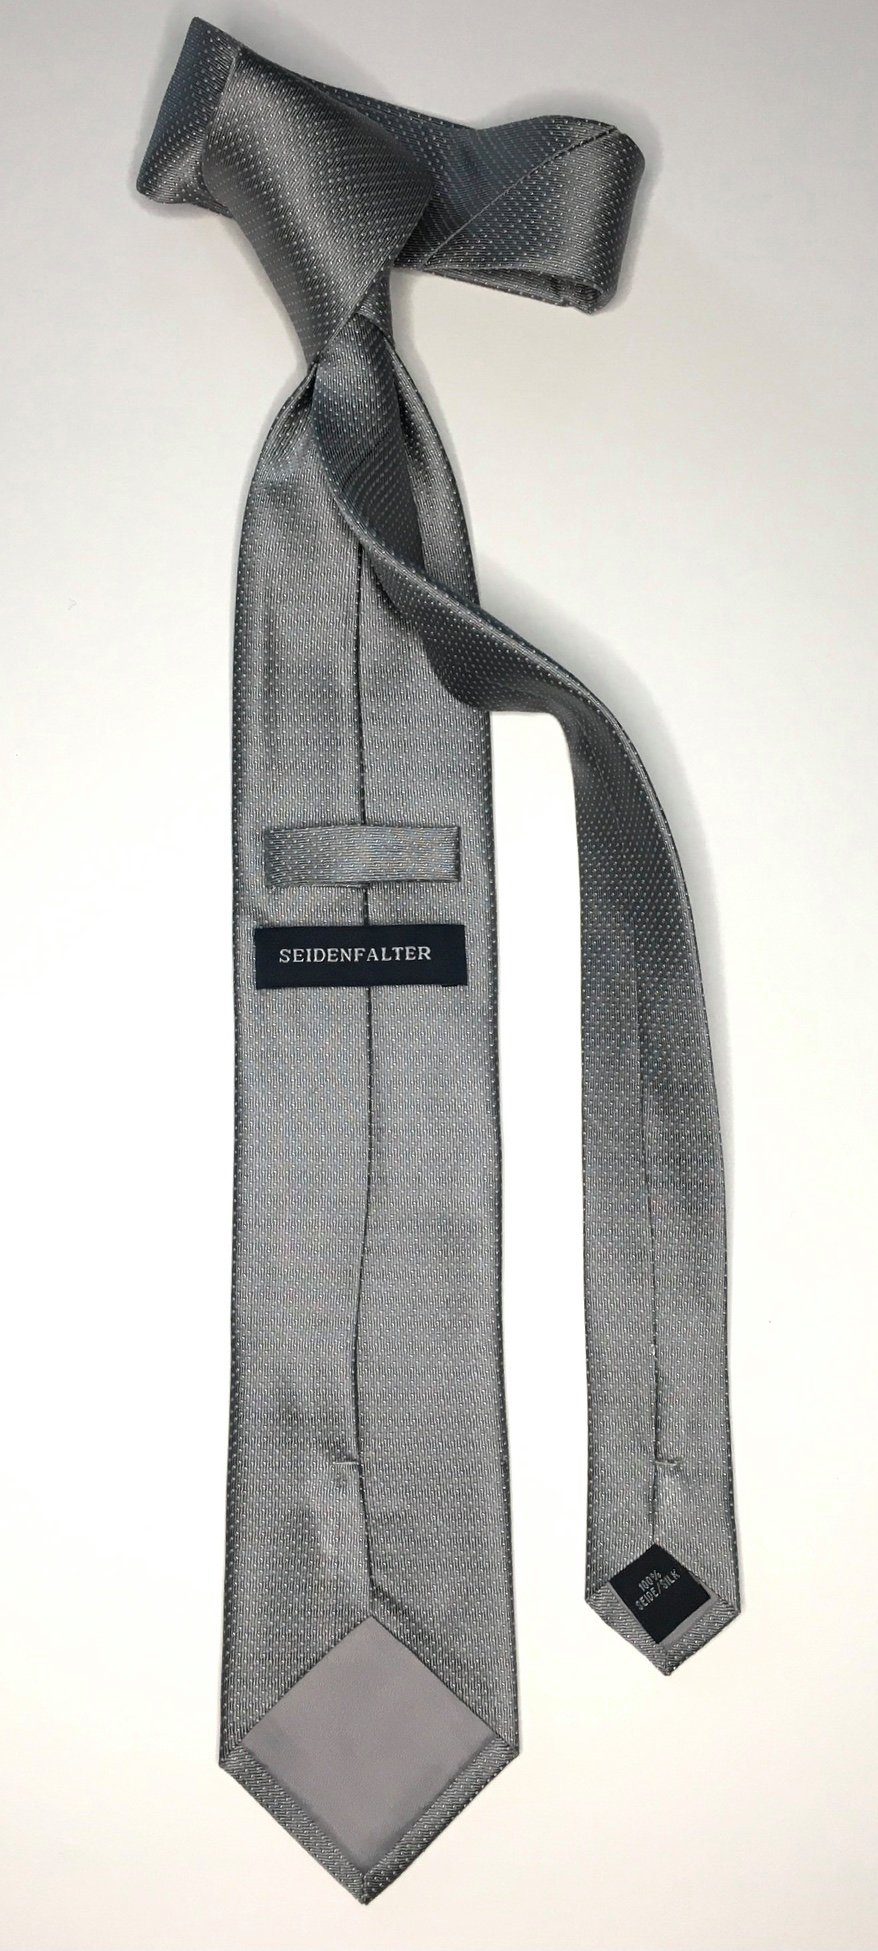 Seidenfalter Design Seidenfalter Krawatte 6cm Picoté im Grau Krawatte Seidenfalter edlen Picoté Krawatte